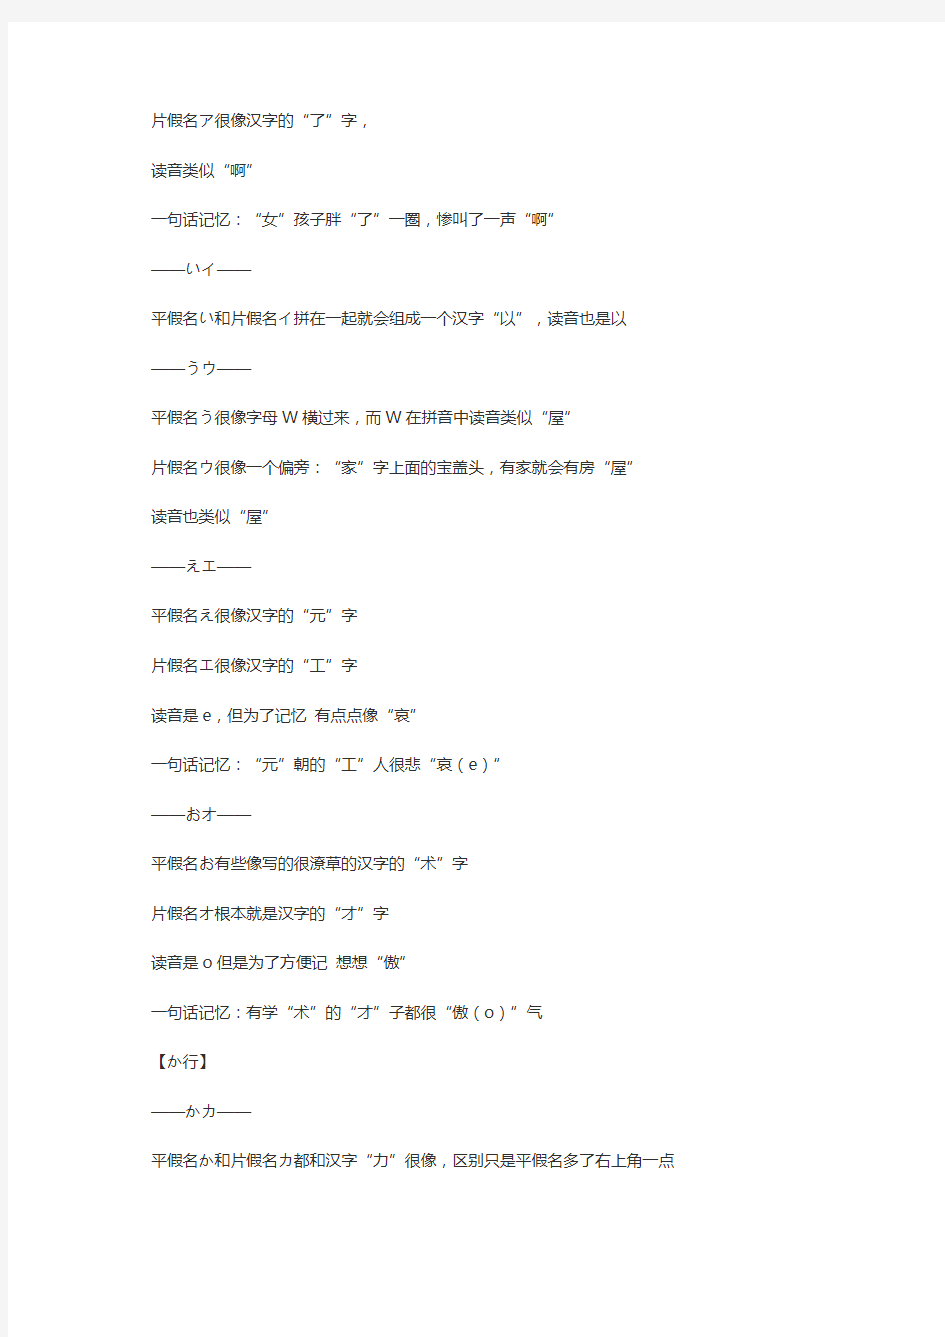 日语五十音图记忆法(转发)